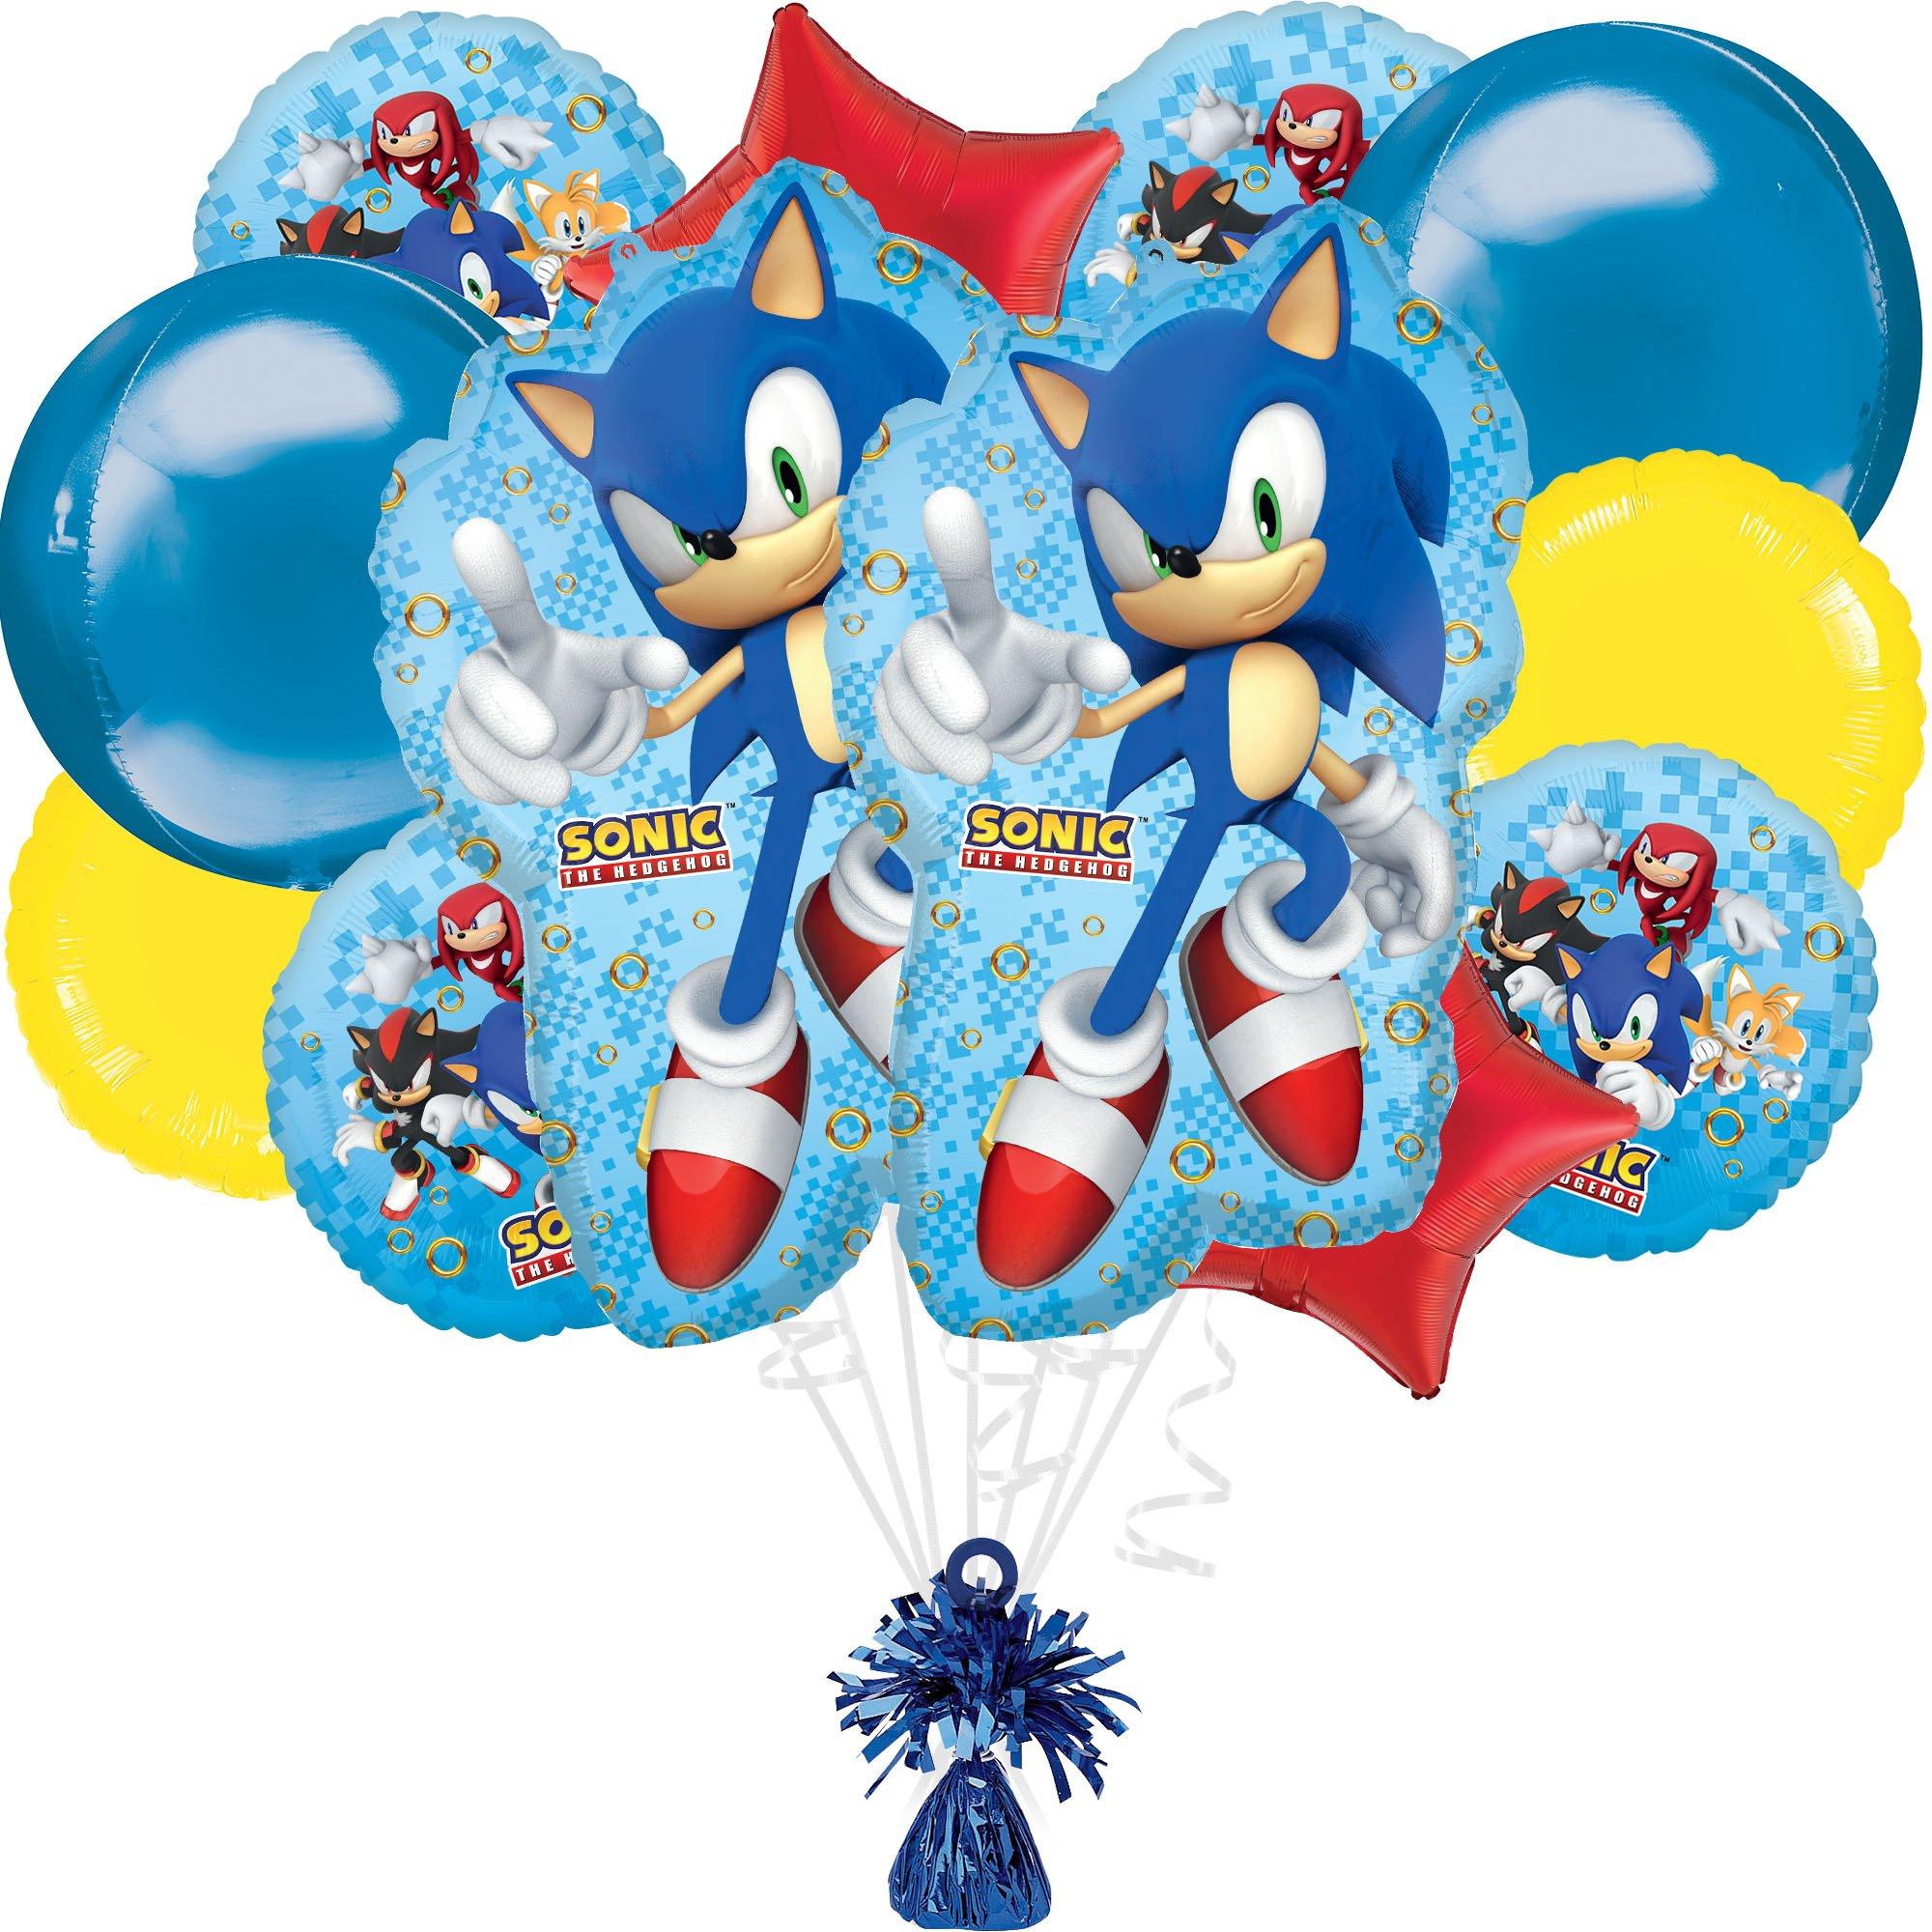 YoYo Balloon Accessories – Larry's Balloons